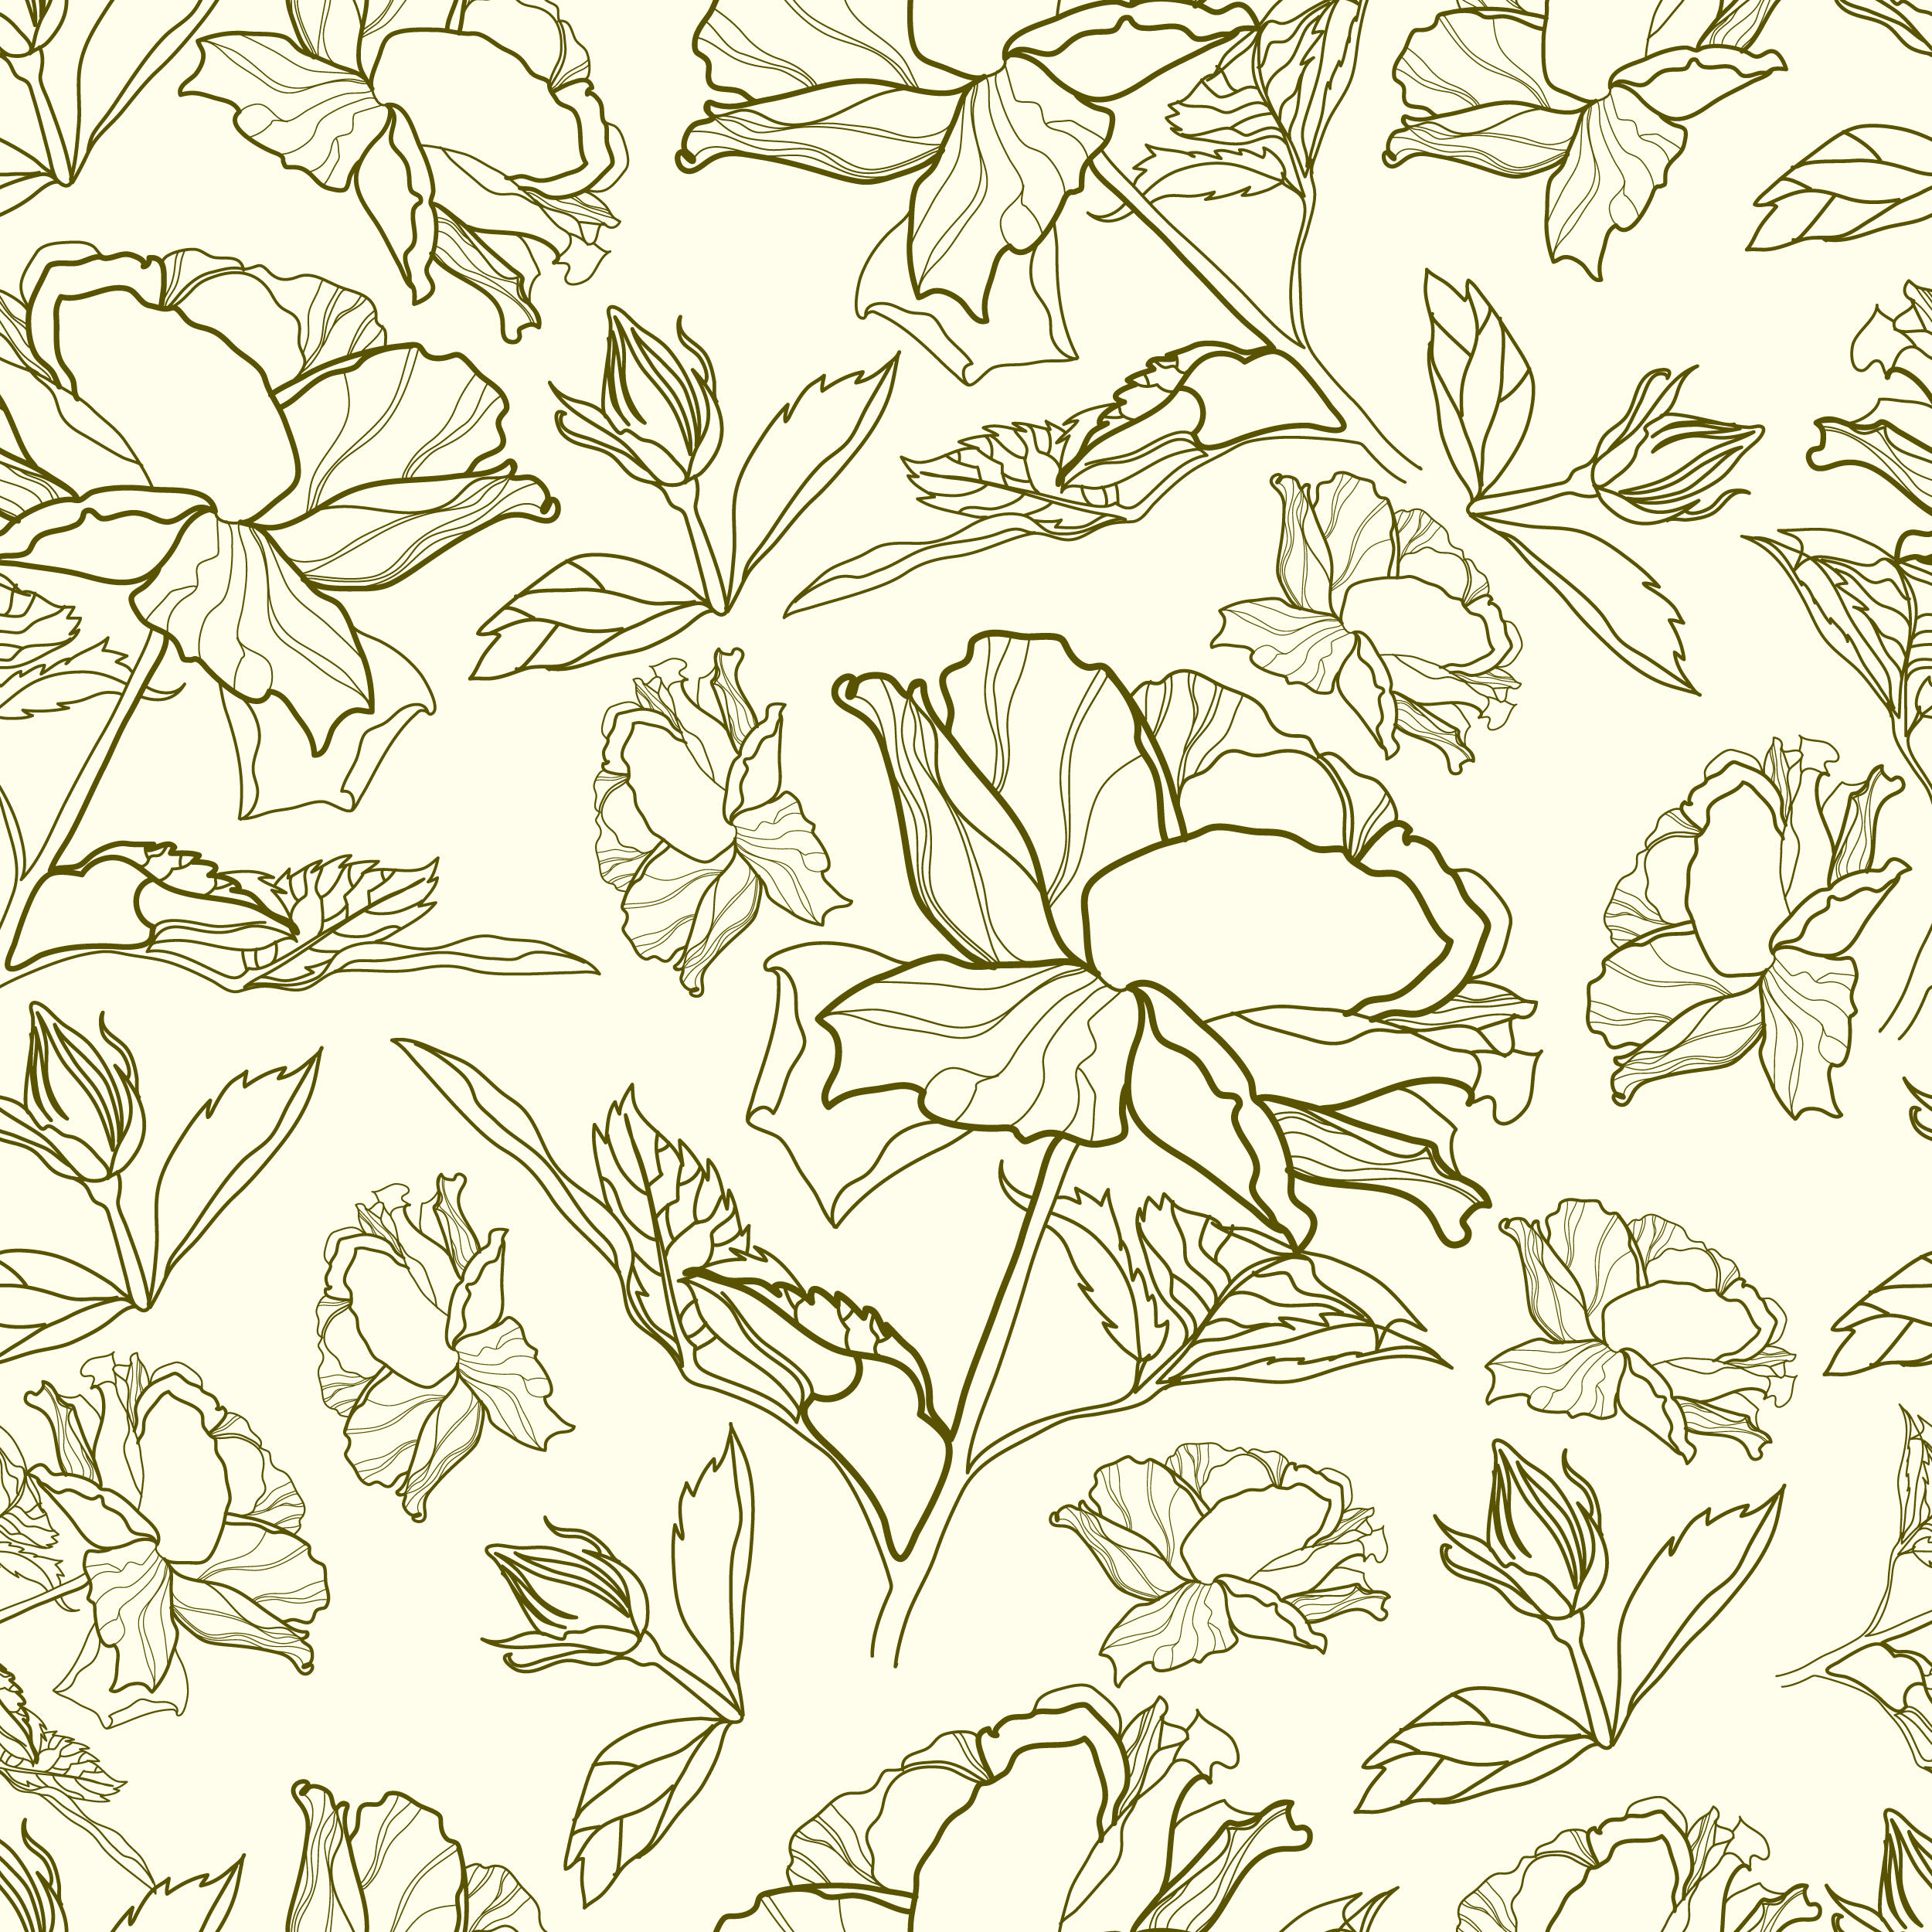 壁紙 背景イラスト 花の模様 柄 パターン No 335 クリーム色 線画